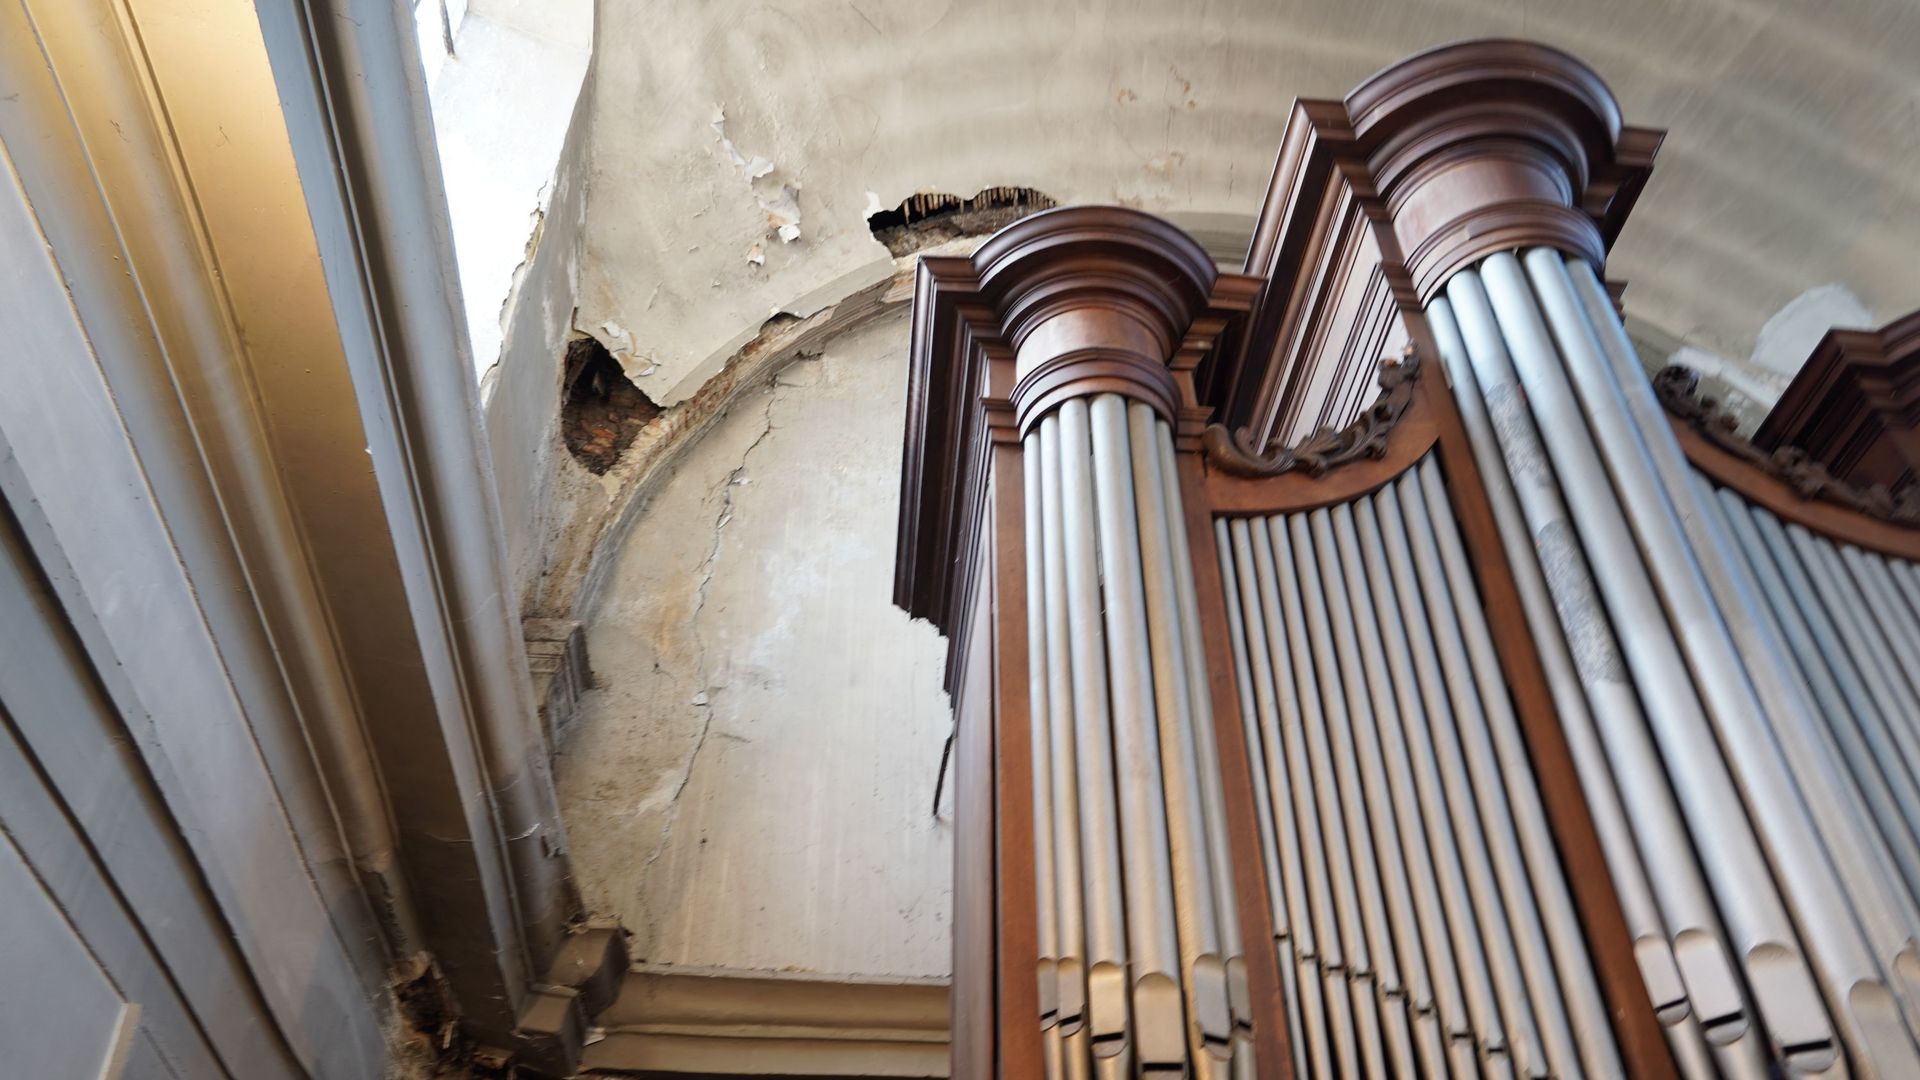 À l'intérieur, c'est principalement la voûte au-dessus de l'orgue qui présente d'importants dégâts. Des morceaux de plâtre se sont détachés de celle-ci pendant un office mais personne n'a été blessé.